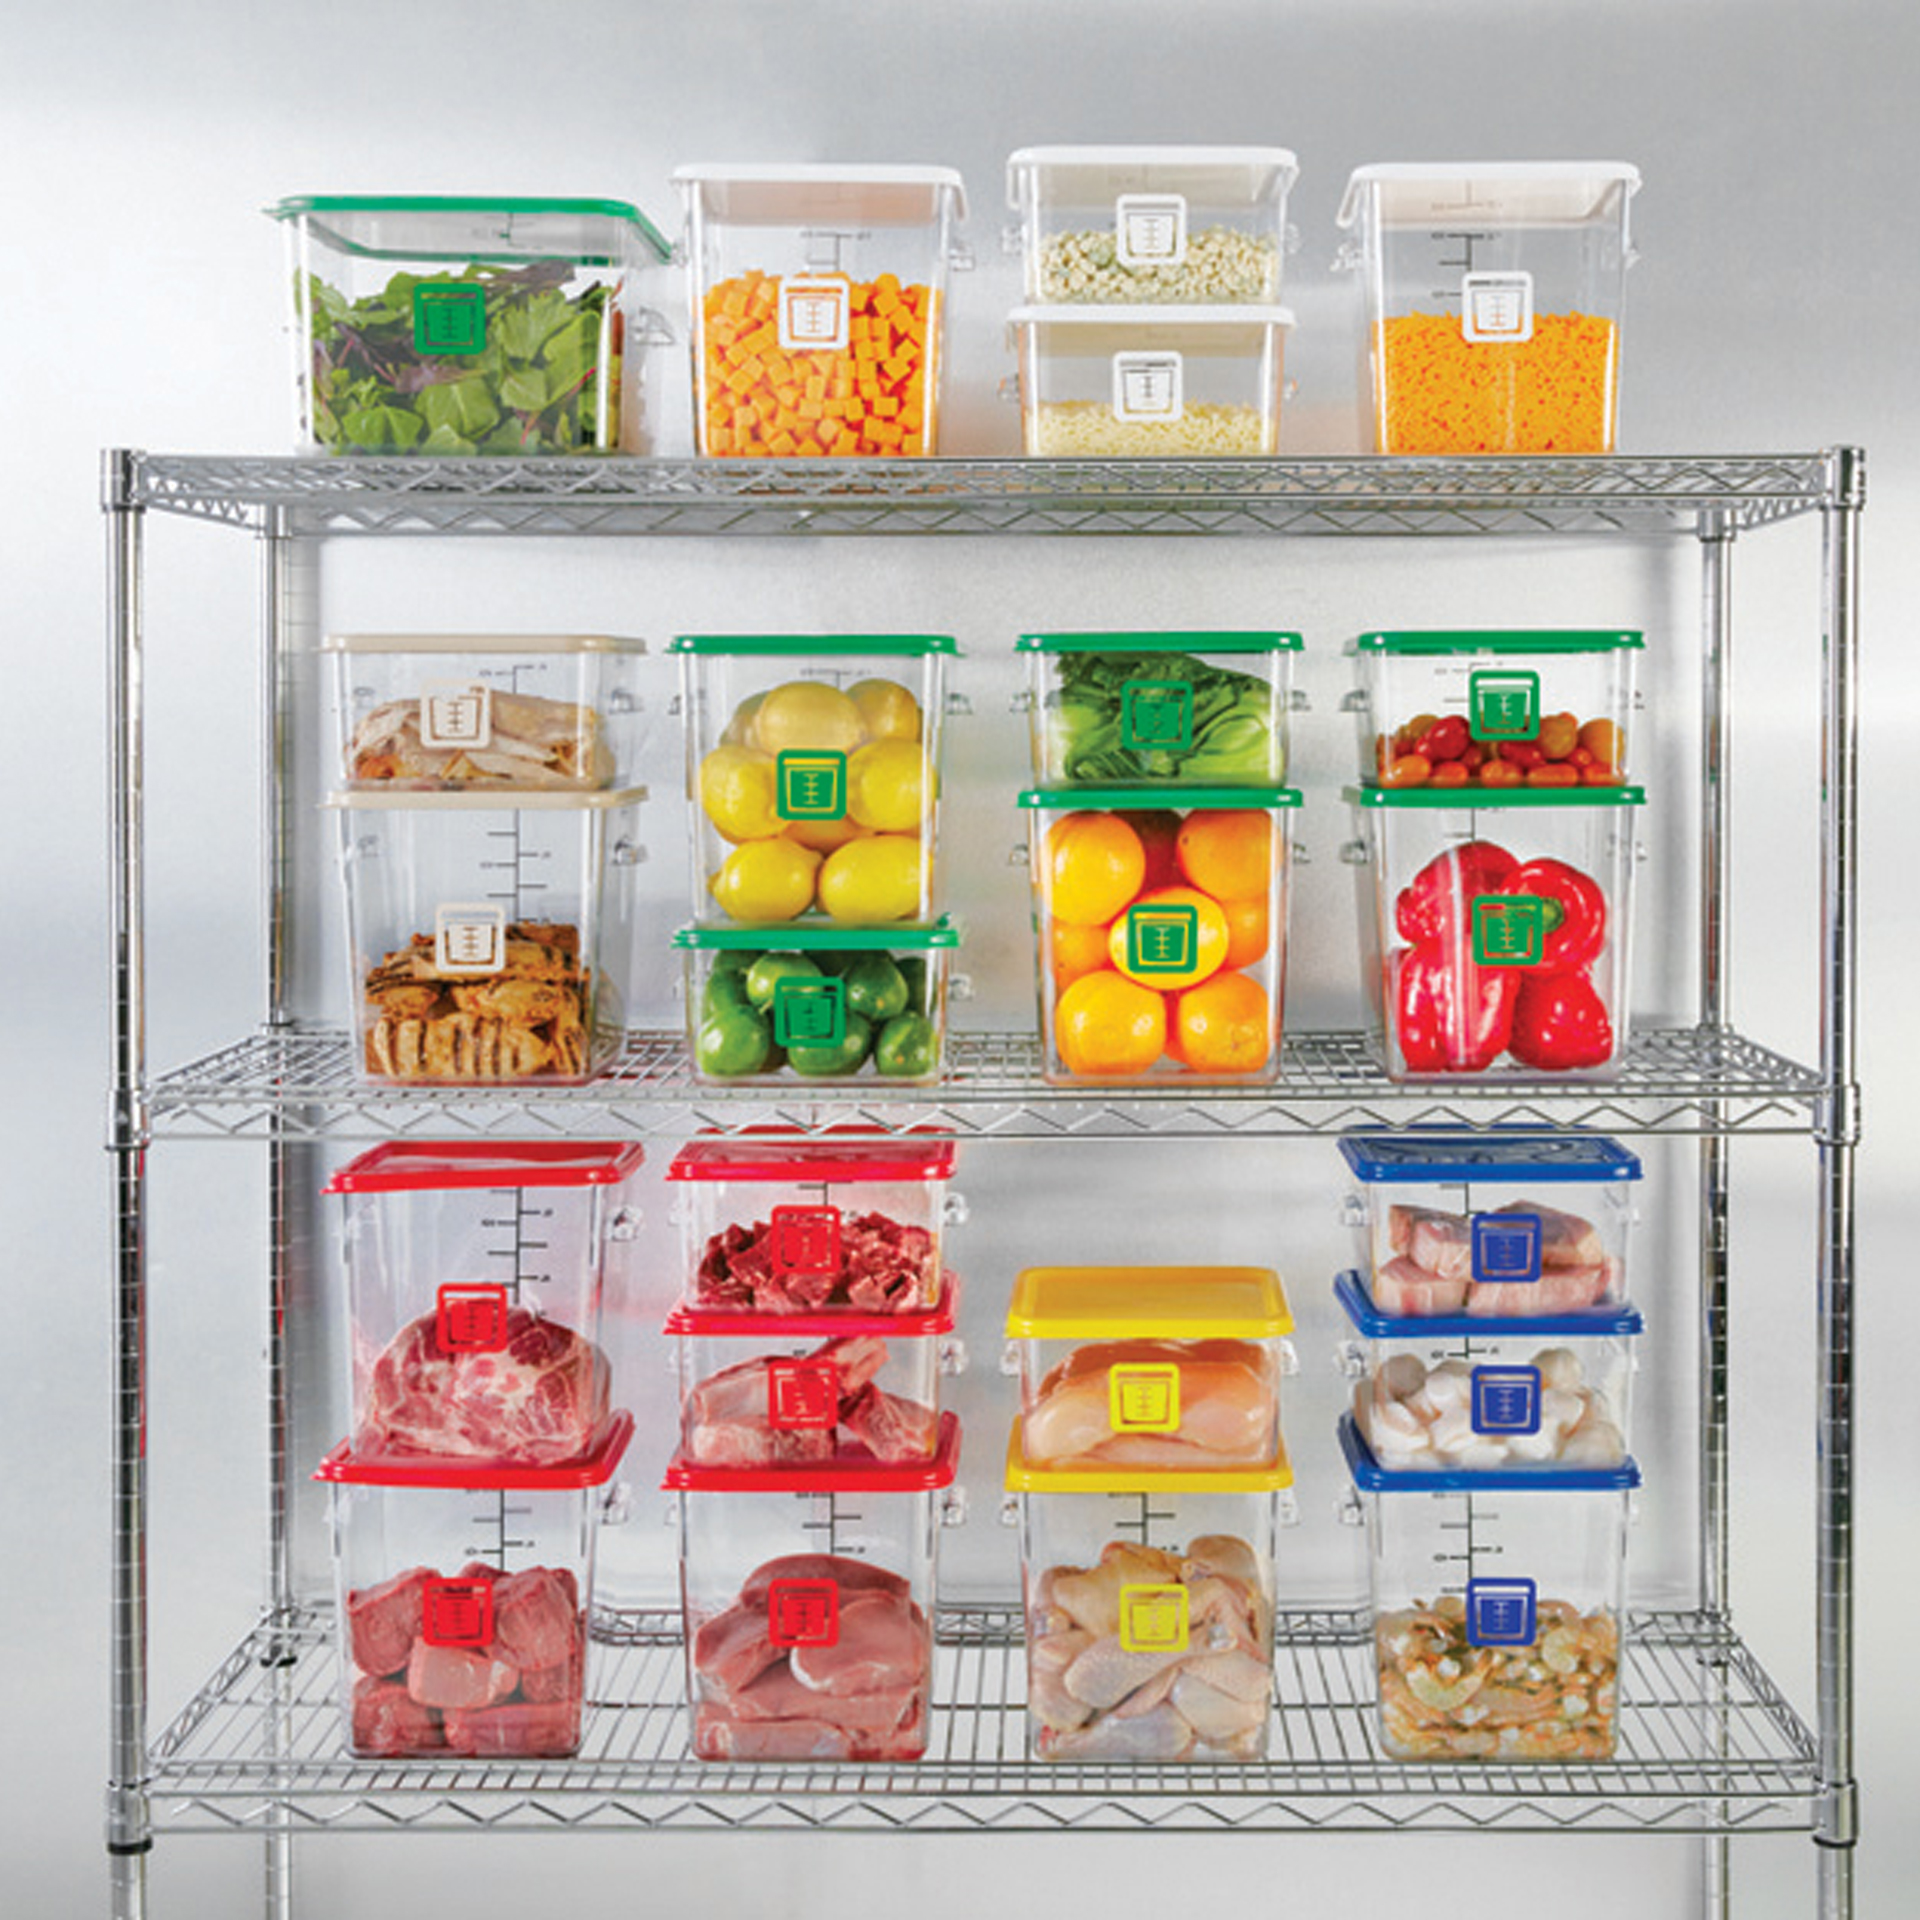 กล่องเก็บวัตถุดิบอาหารสี่เหลี่ยม Color-Coded Square Container Clear ขนาด 4 qt สีเหลือง